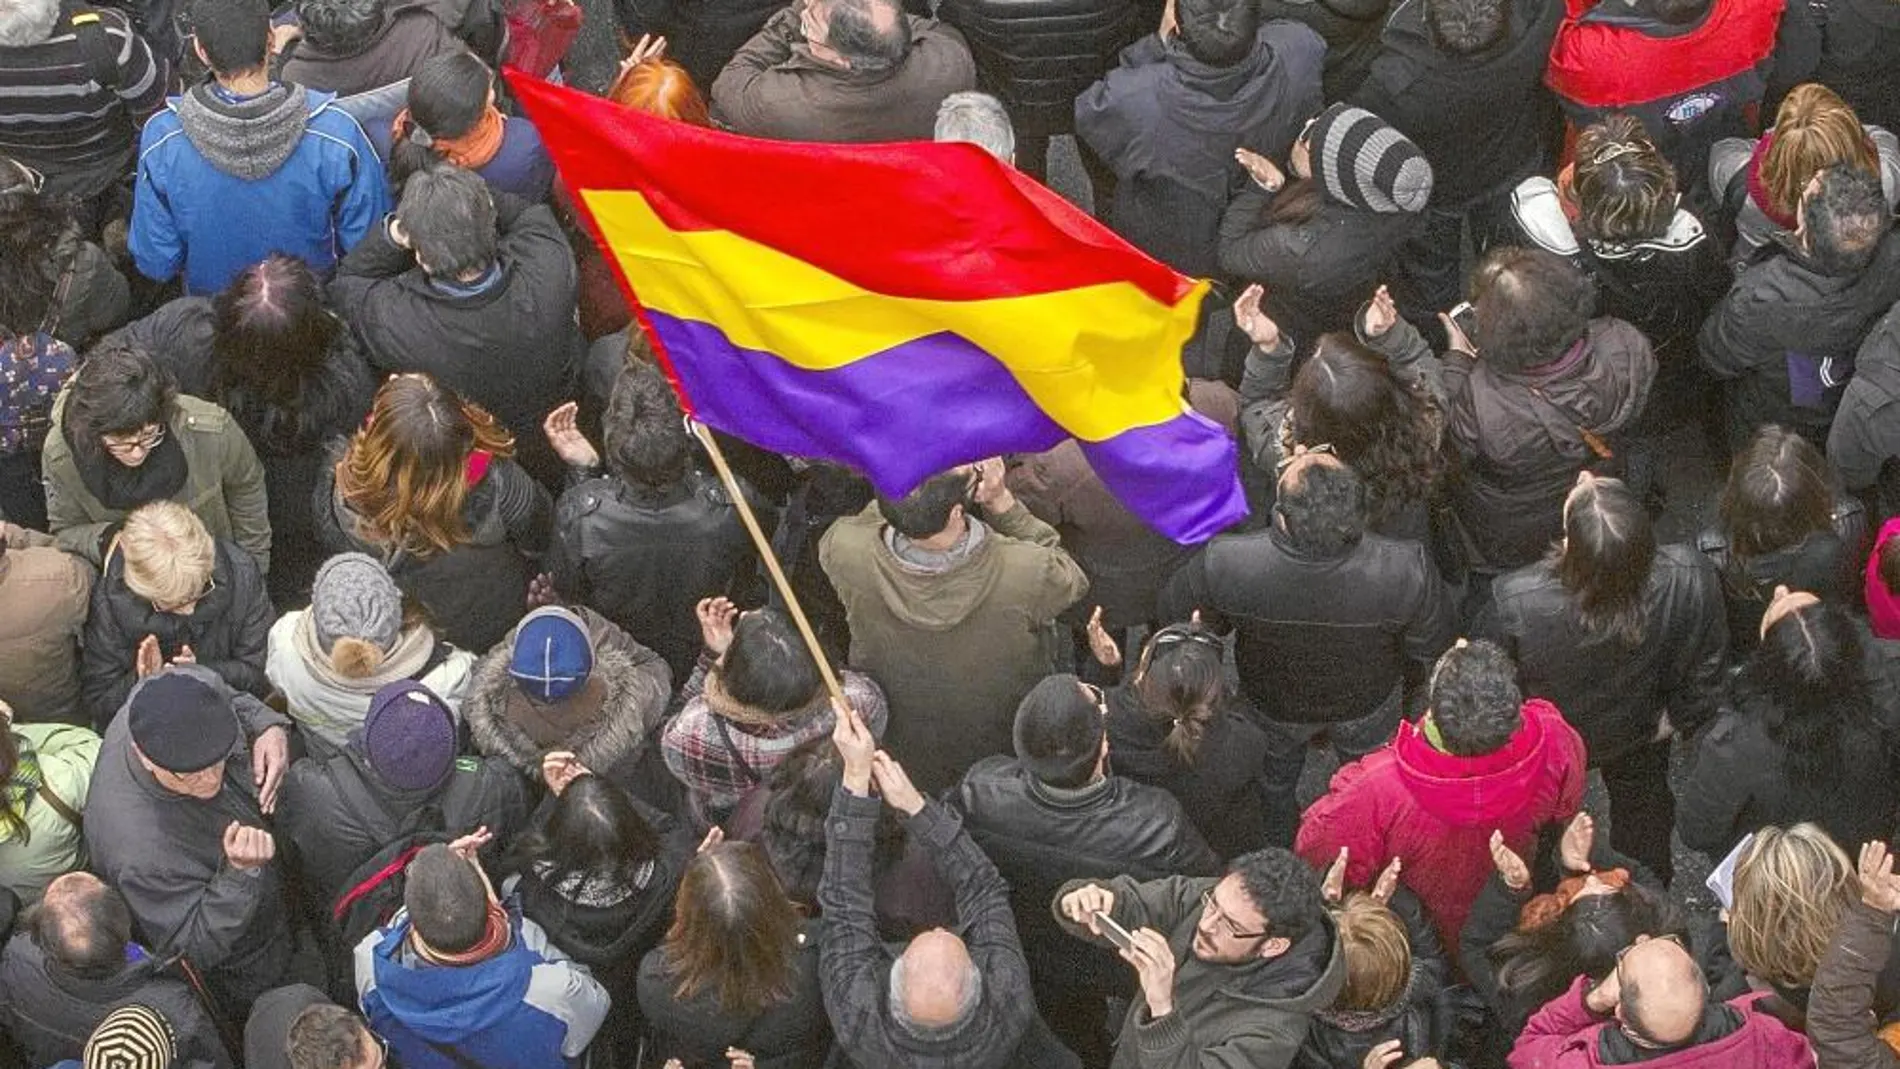 La bandera republicana fue la más portada por los asistentes a la marcha que ayer acabó en la Puerta del Sol